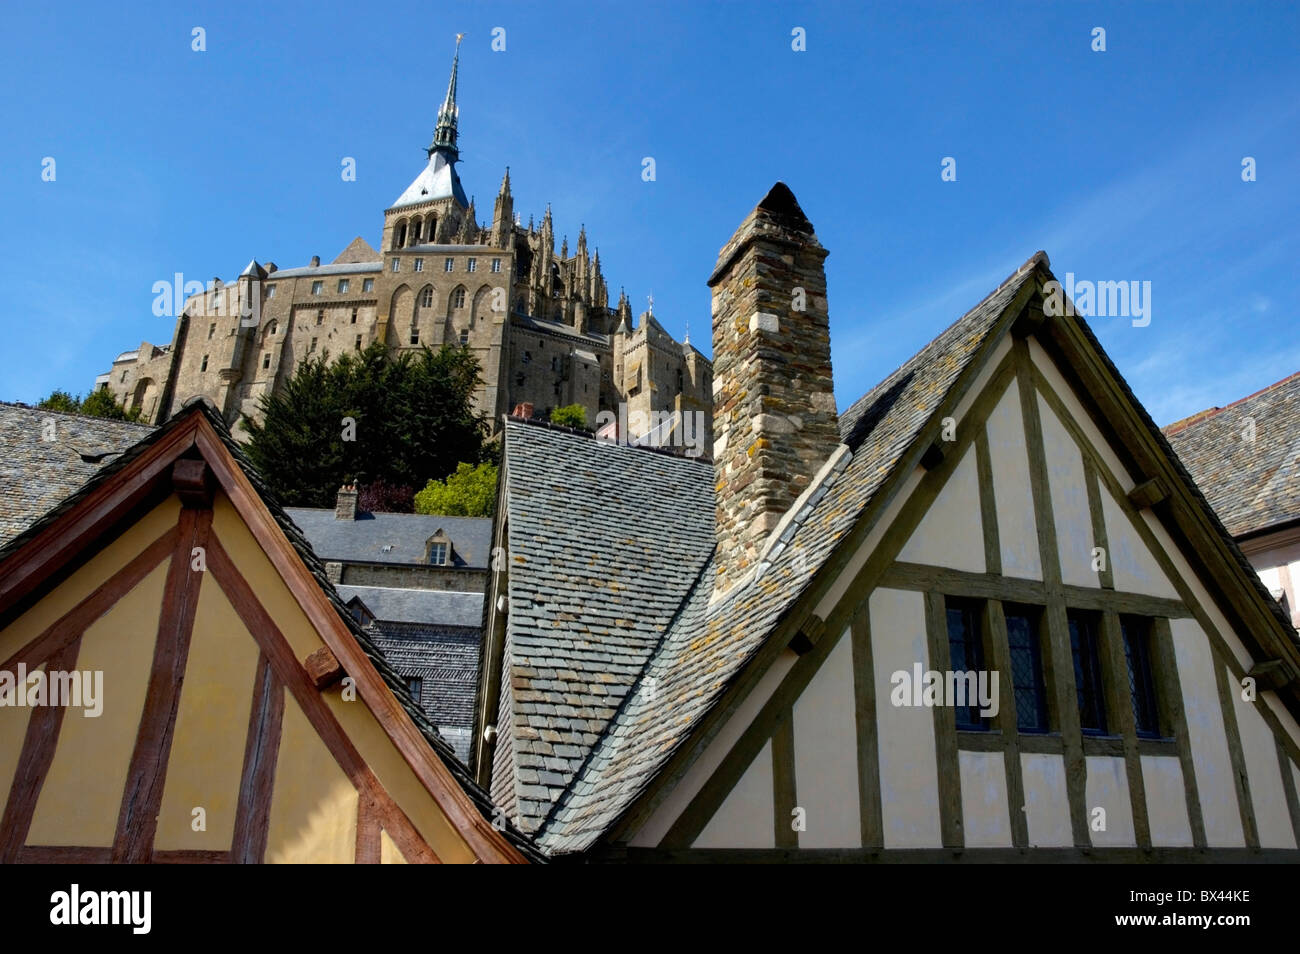 Maisons typiques de la vieille ville entourant le Mont Saint-Michel, un monastère médiéval fortifié sur une île en Normandie, France. Banque D'Images